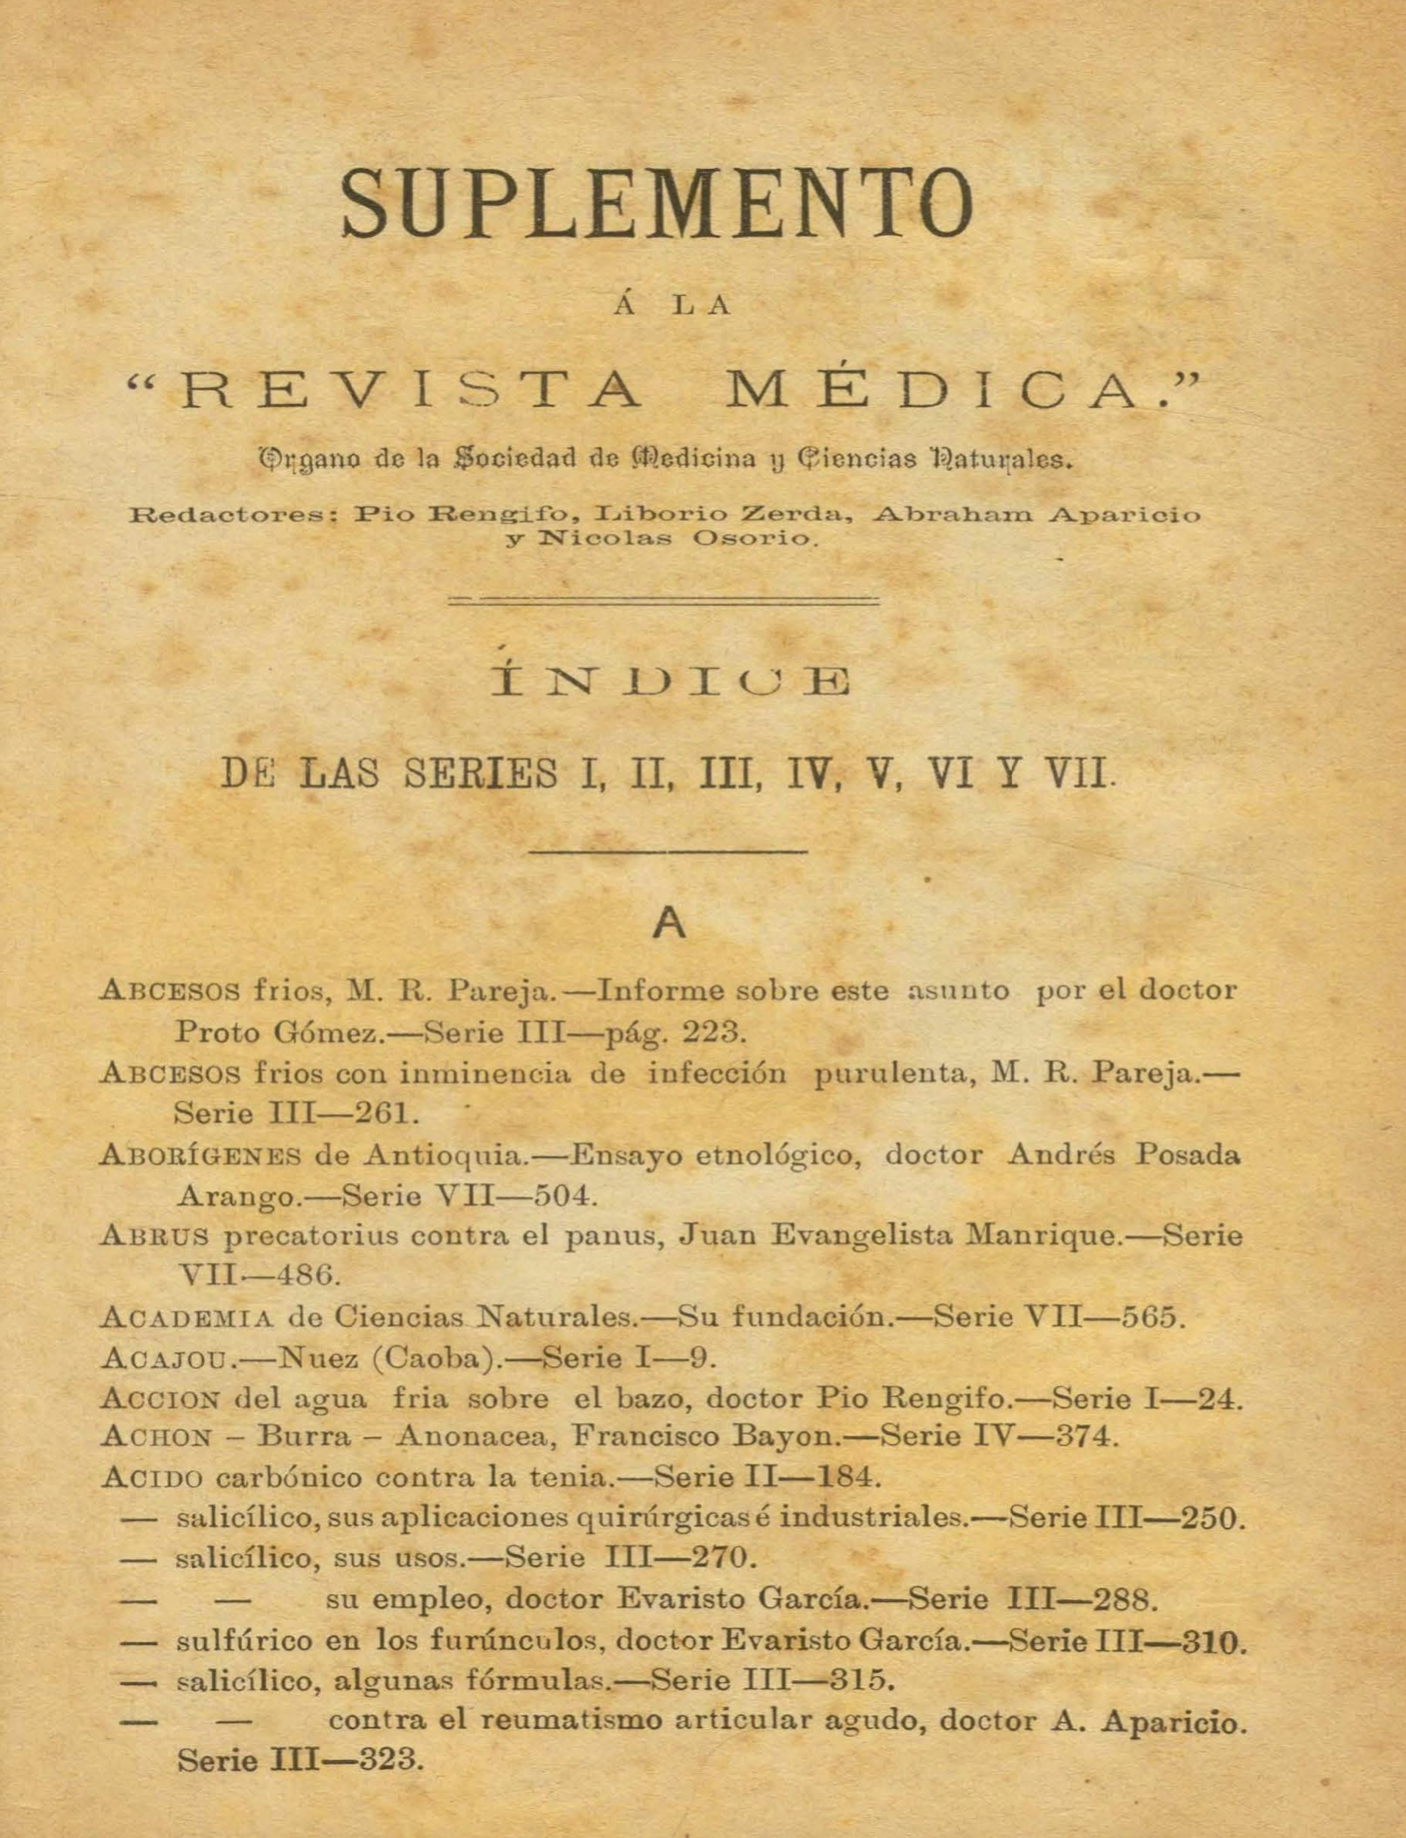 					Ver Vol. 7 Núm. Suplemento (1883): Revista Médica de Bogotá. Serie I-Vll. Año 1881-1883. Suplemento
				